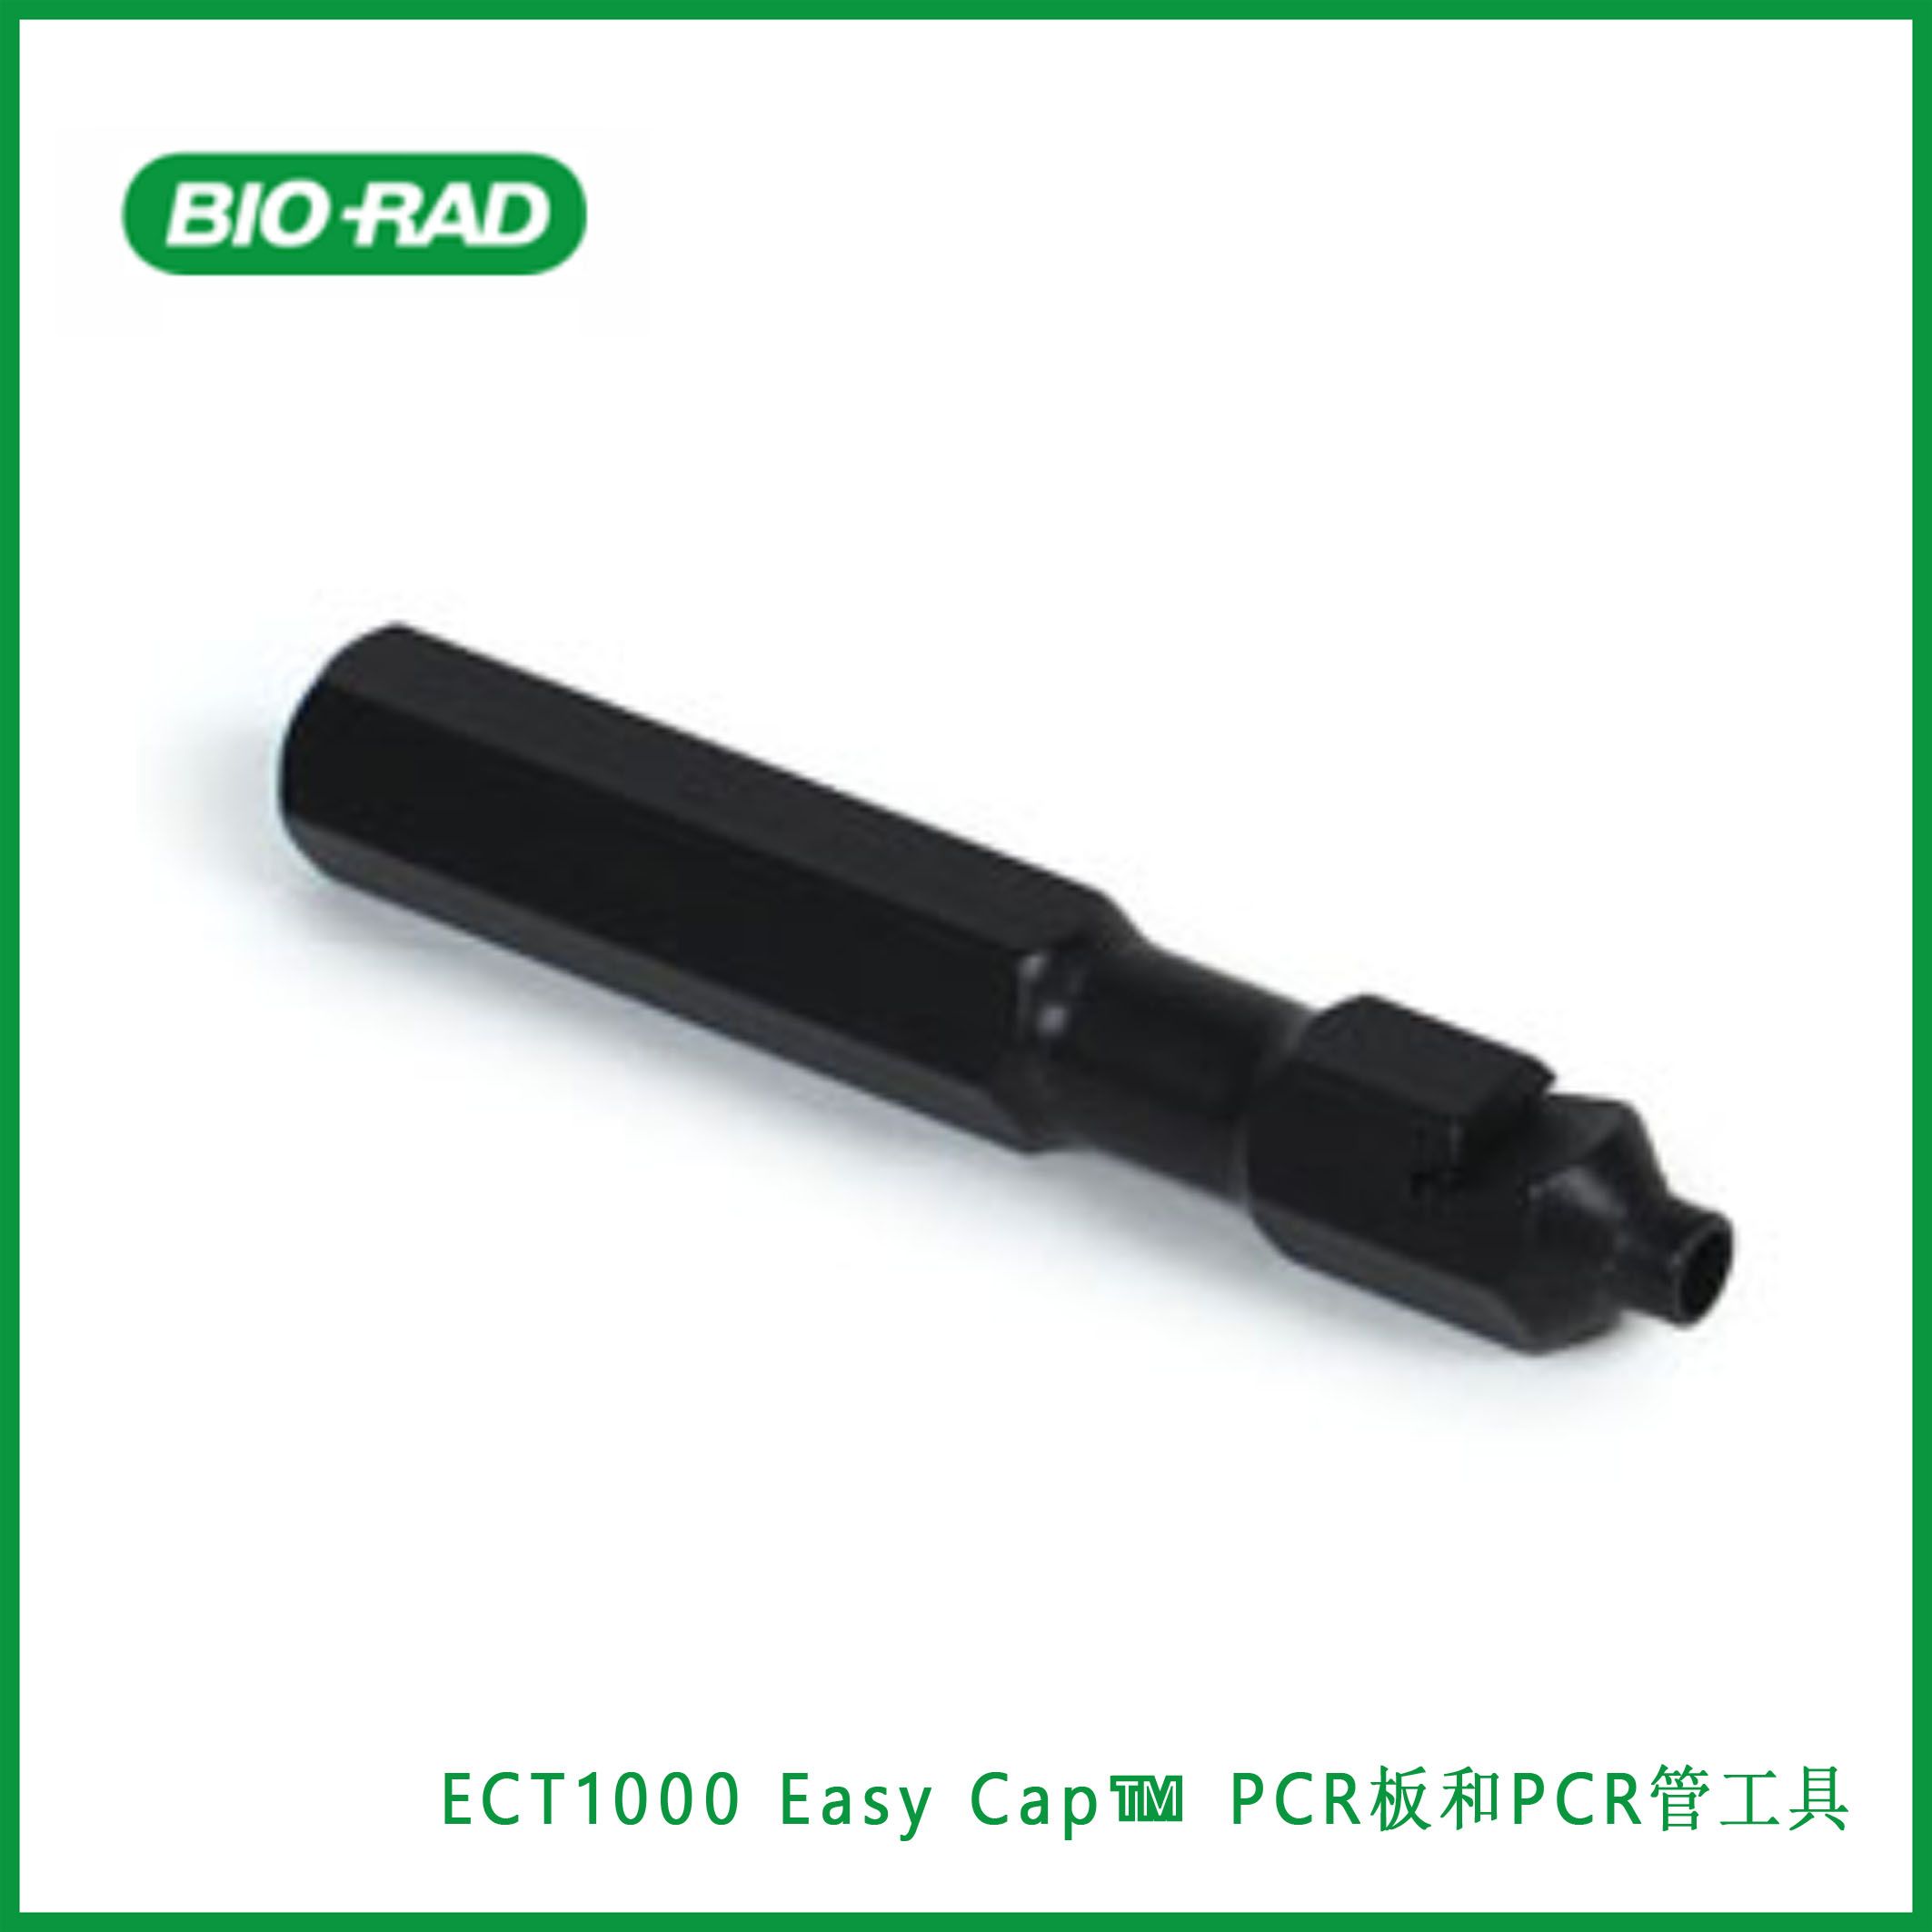 伯乐Bio-RadECT1000 Easy Cap™ Tool for PCR Plates and PCR Tubes, Easy Cap™ PCR板和PCR管工具，现货